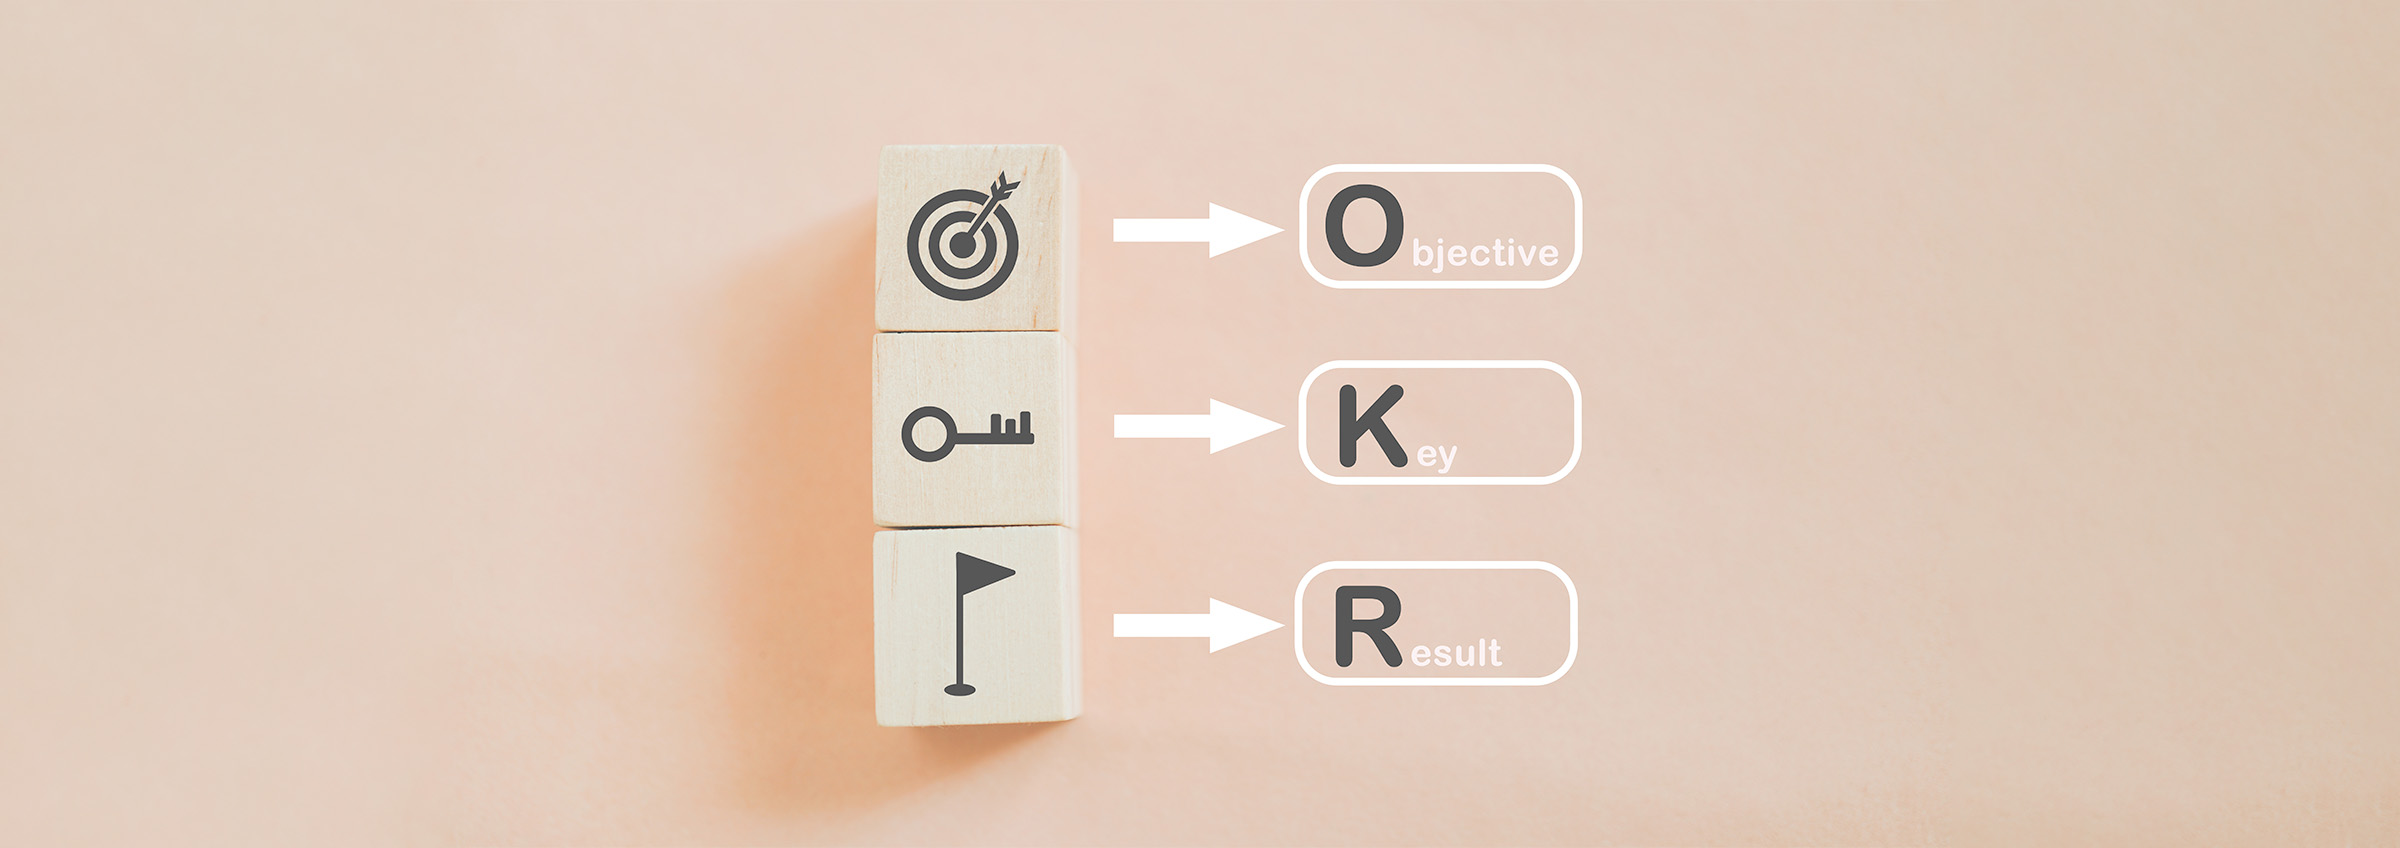 OKR (Objectives and Key Results) Nedir? İnsan Kaynakları Süreçlerinde OKR Kullanımı